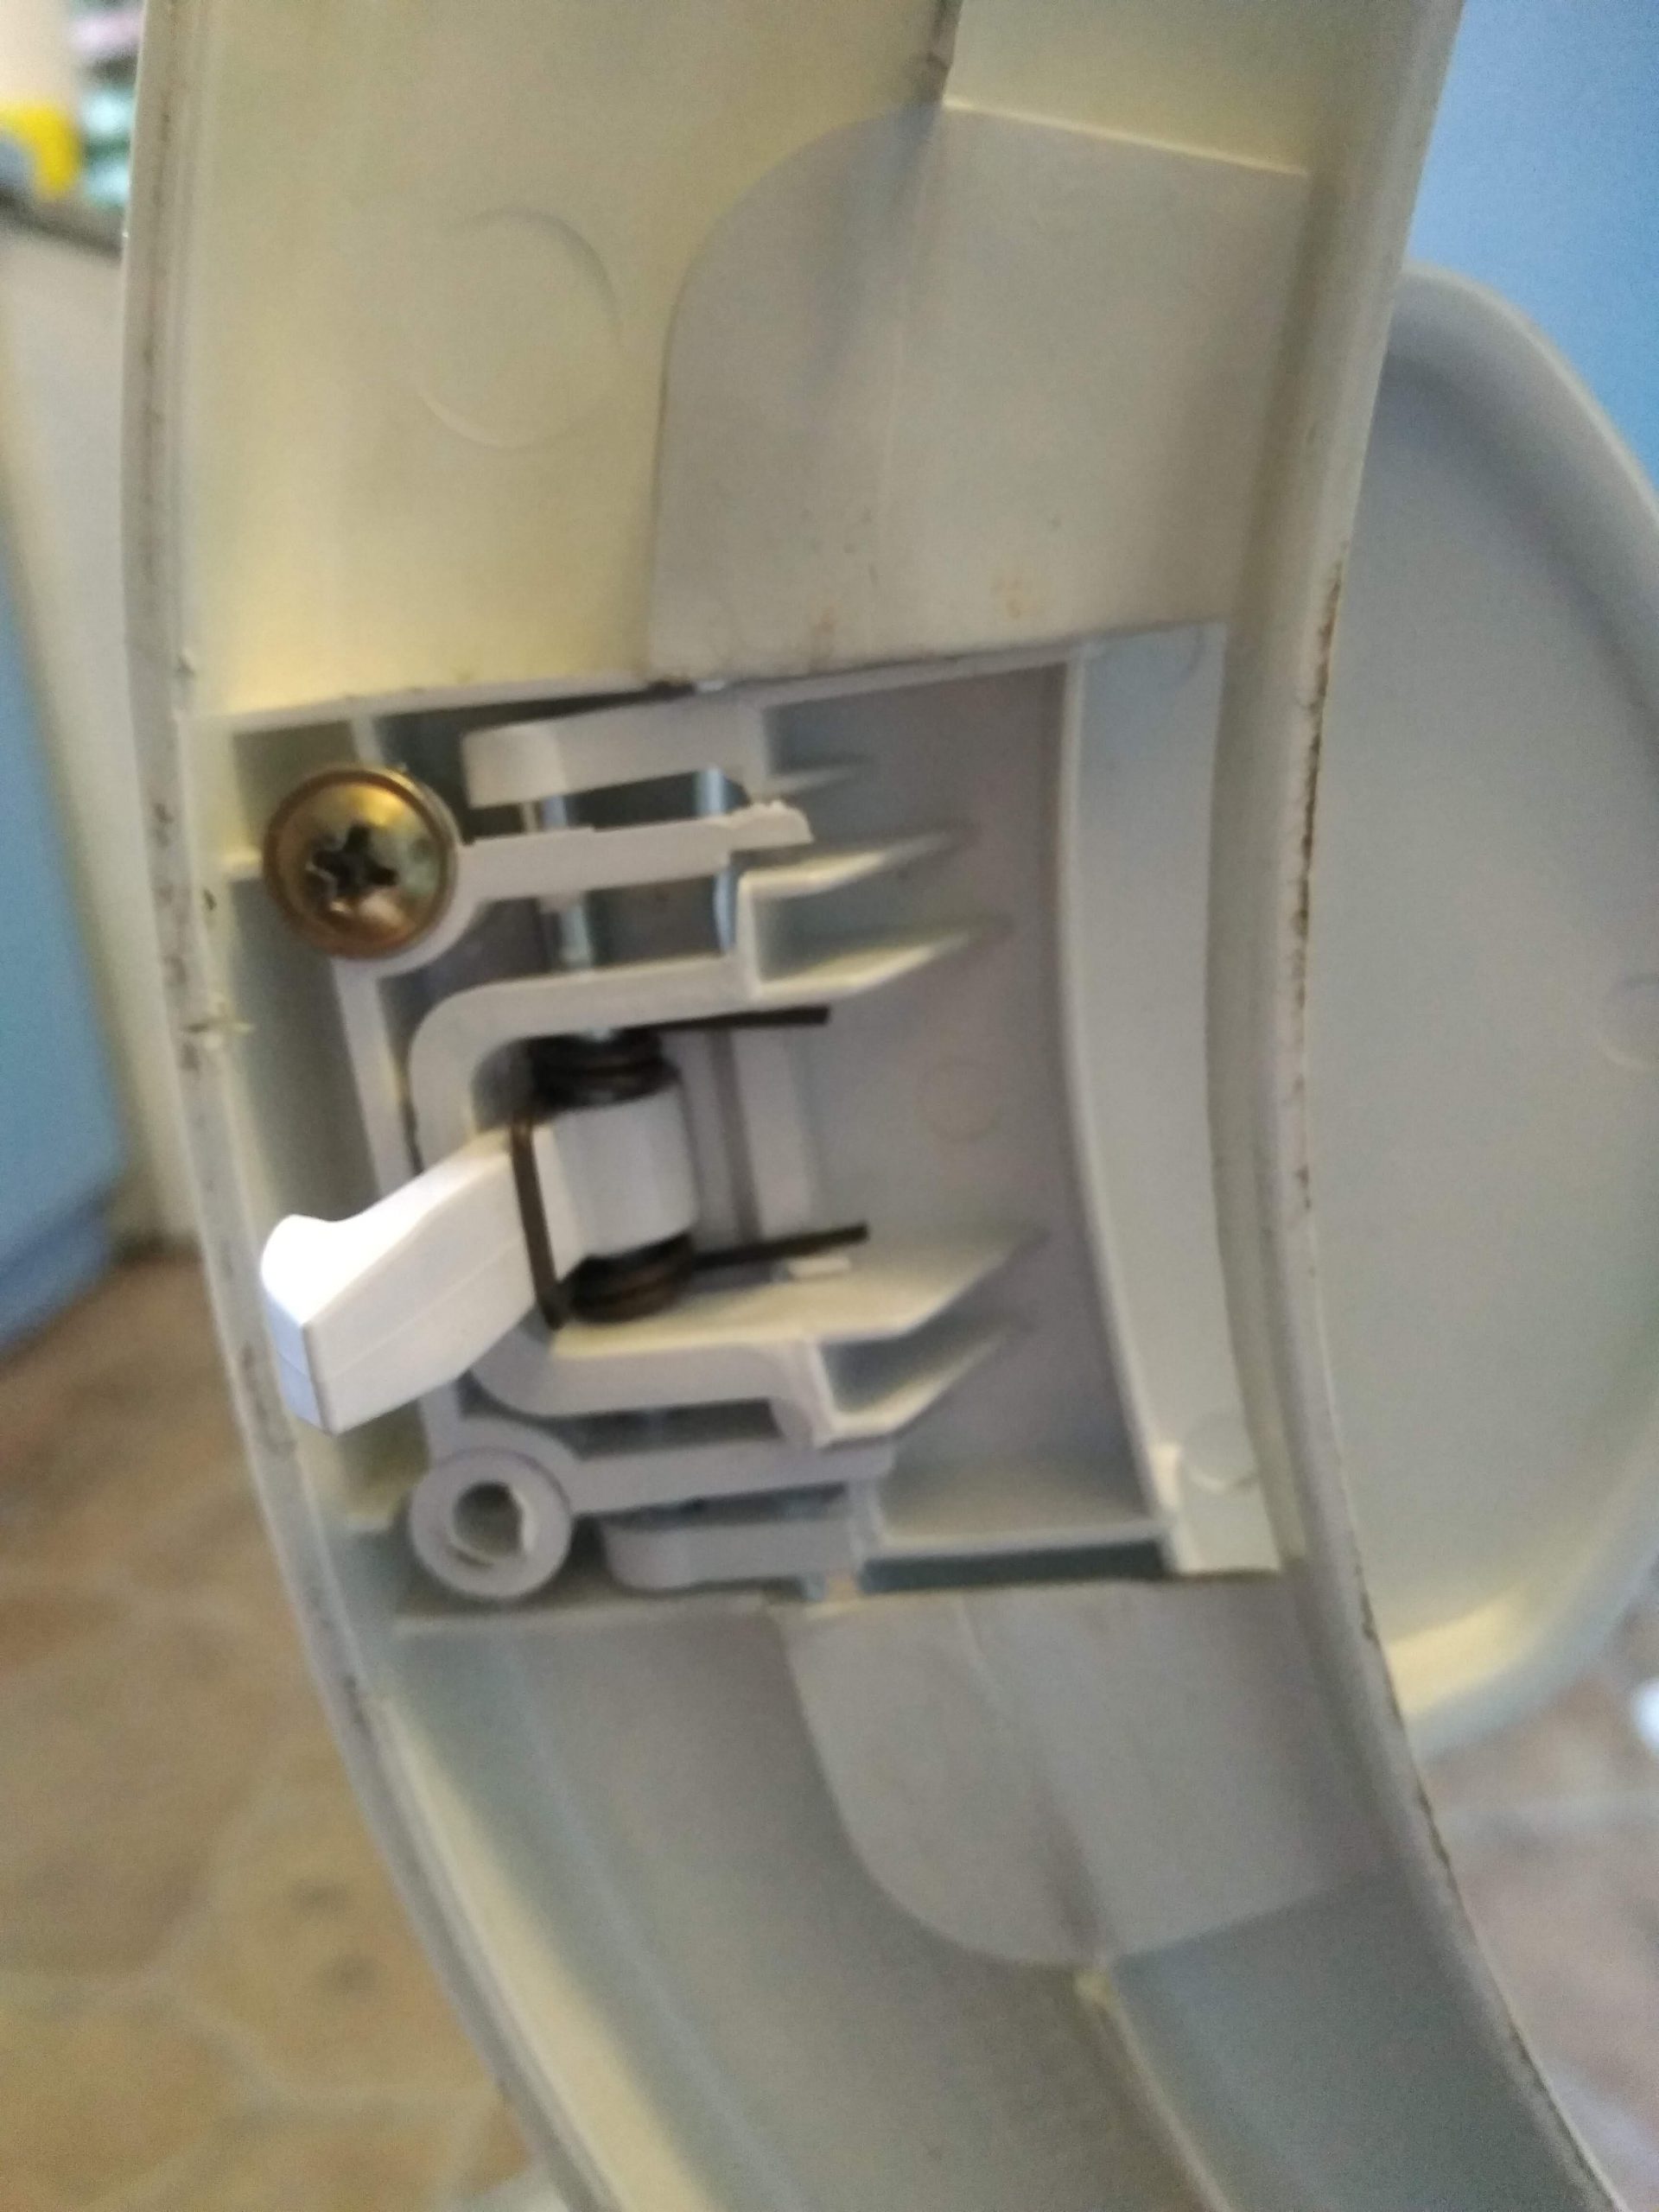 Klamka w pralce Mastercook PF2-400 przestała ruszać hakiem - wymiana uchwytu